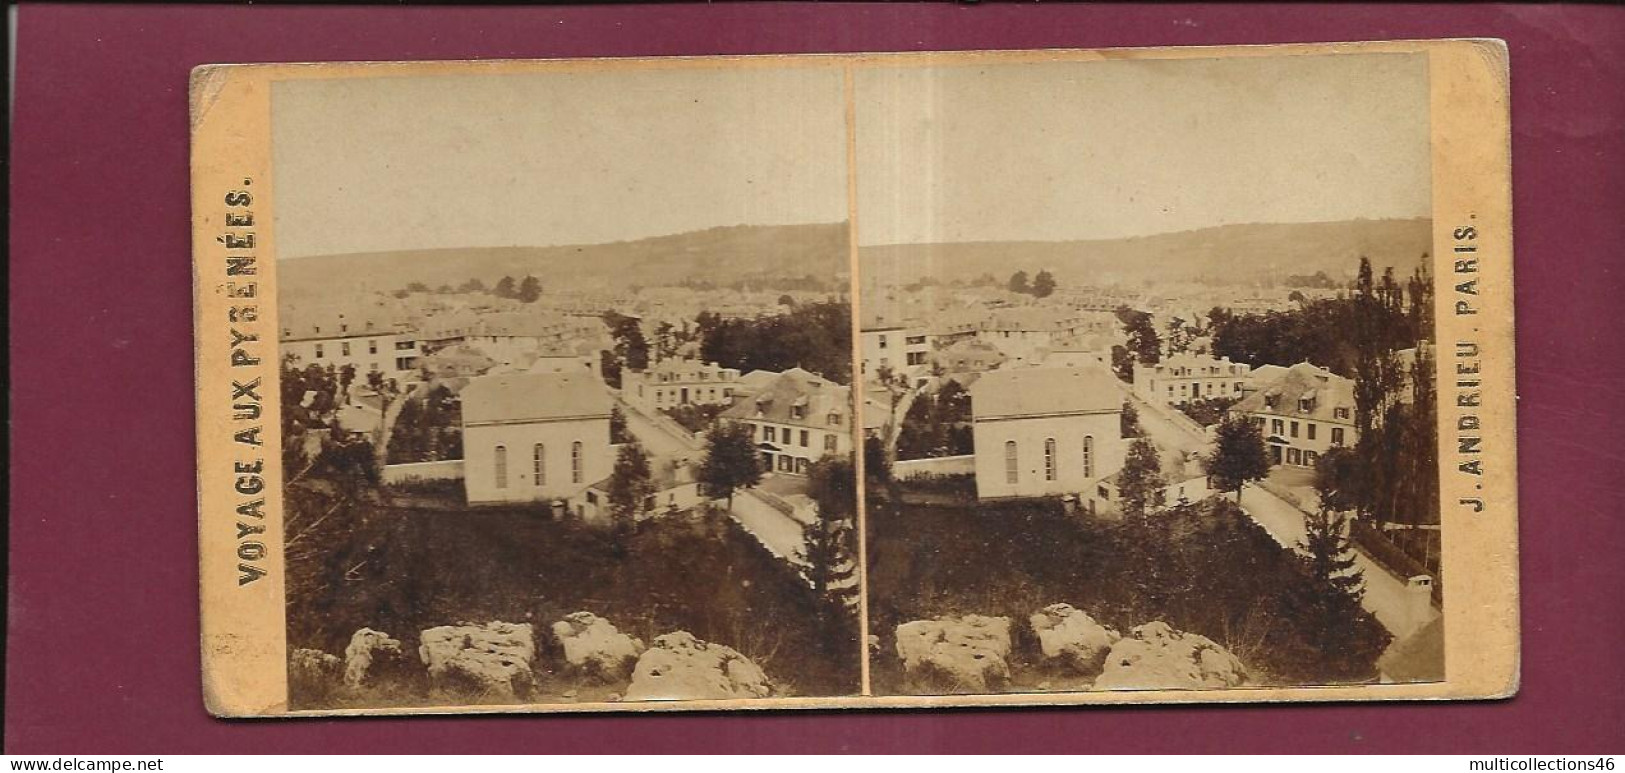 190424 - PHOTO STEREO PAPIER - VOYAGE AUX PYRENEES J ANDRIEU PARIS - BAGNERES DE BIGORRE Vue Prise De Lapeyrère - Stereoscopio